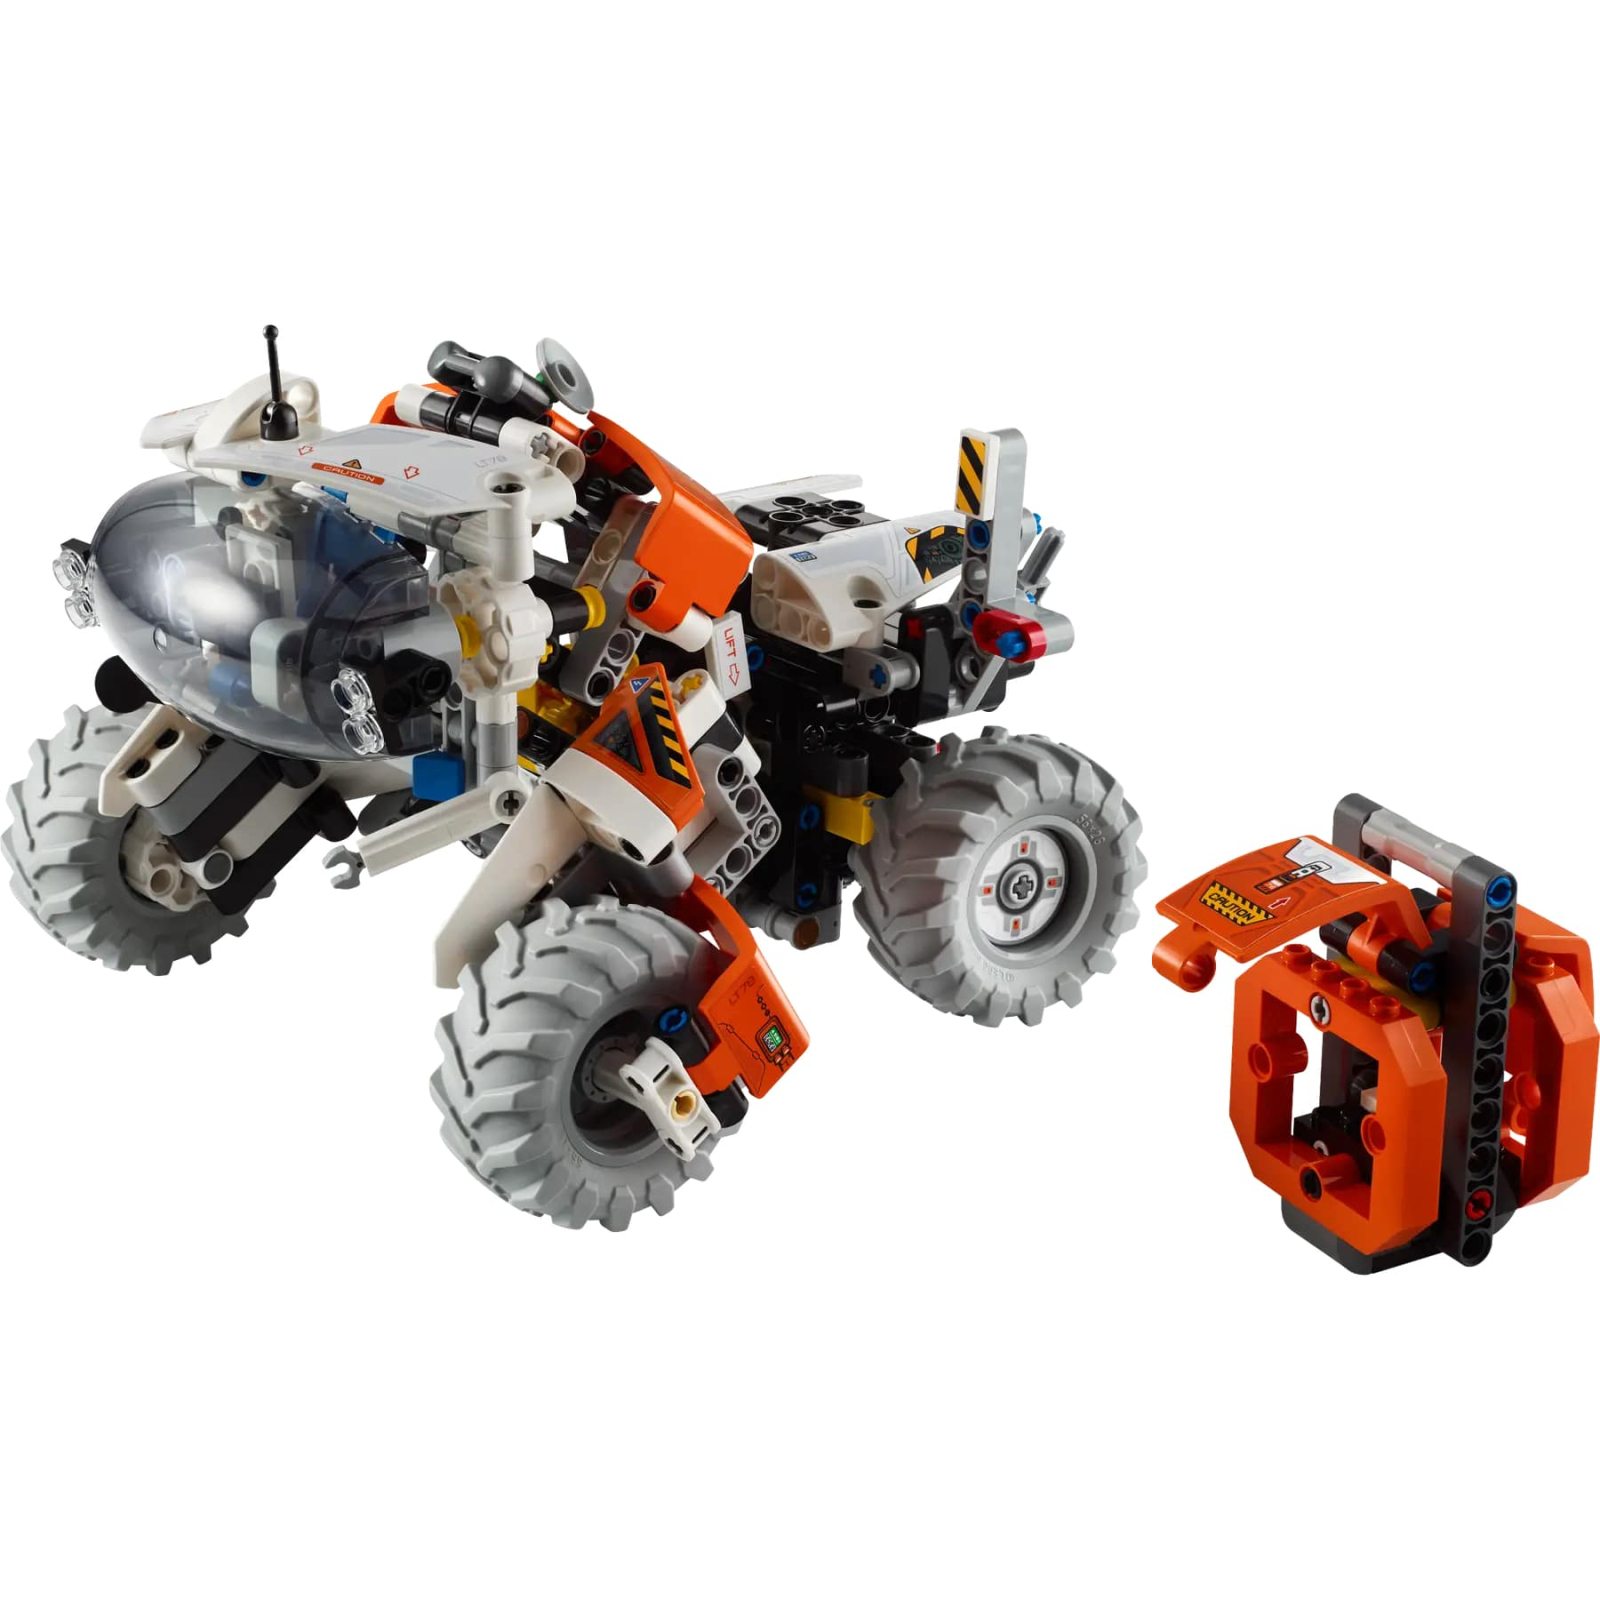 Конструктор LEGO Technic Космический колесный погрузчик LT78 435 деталей (42178)